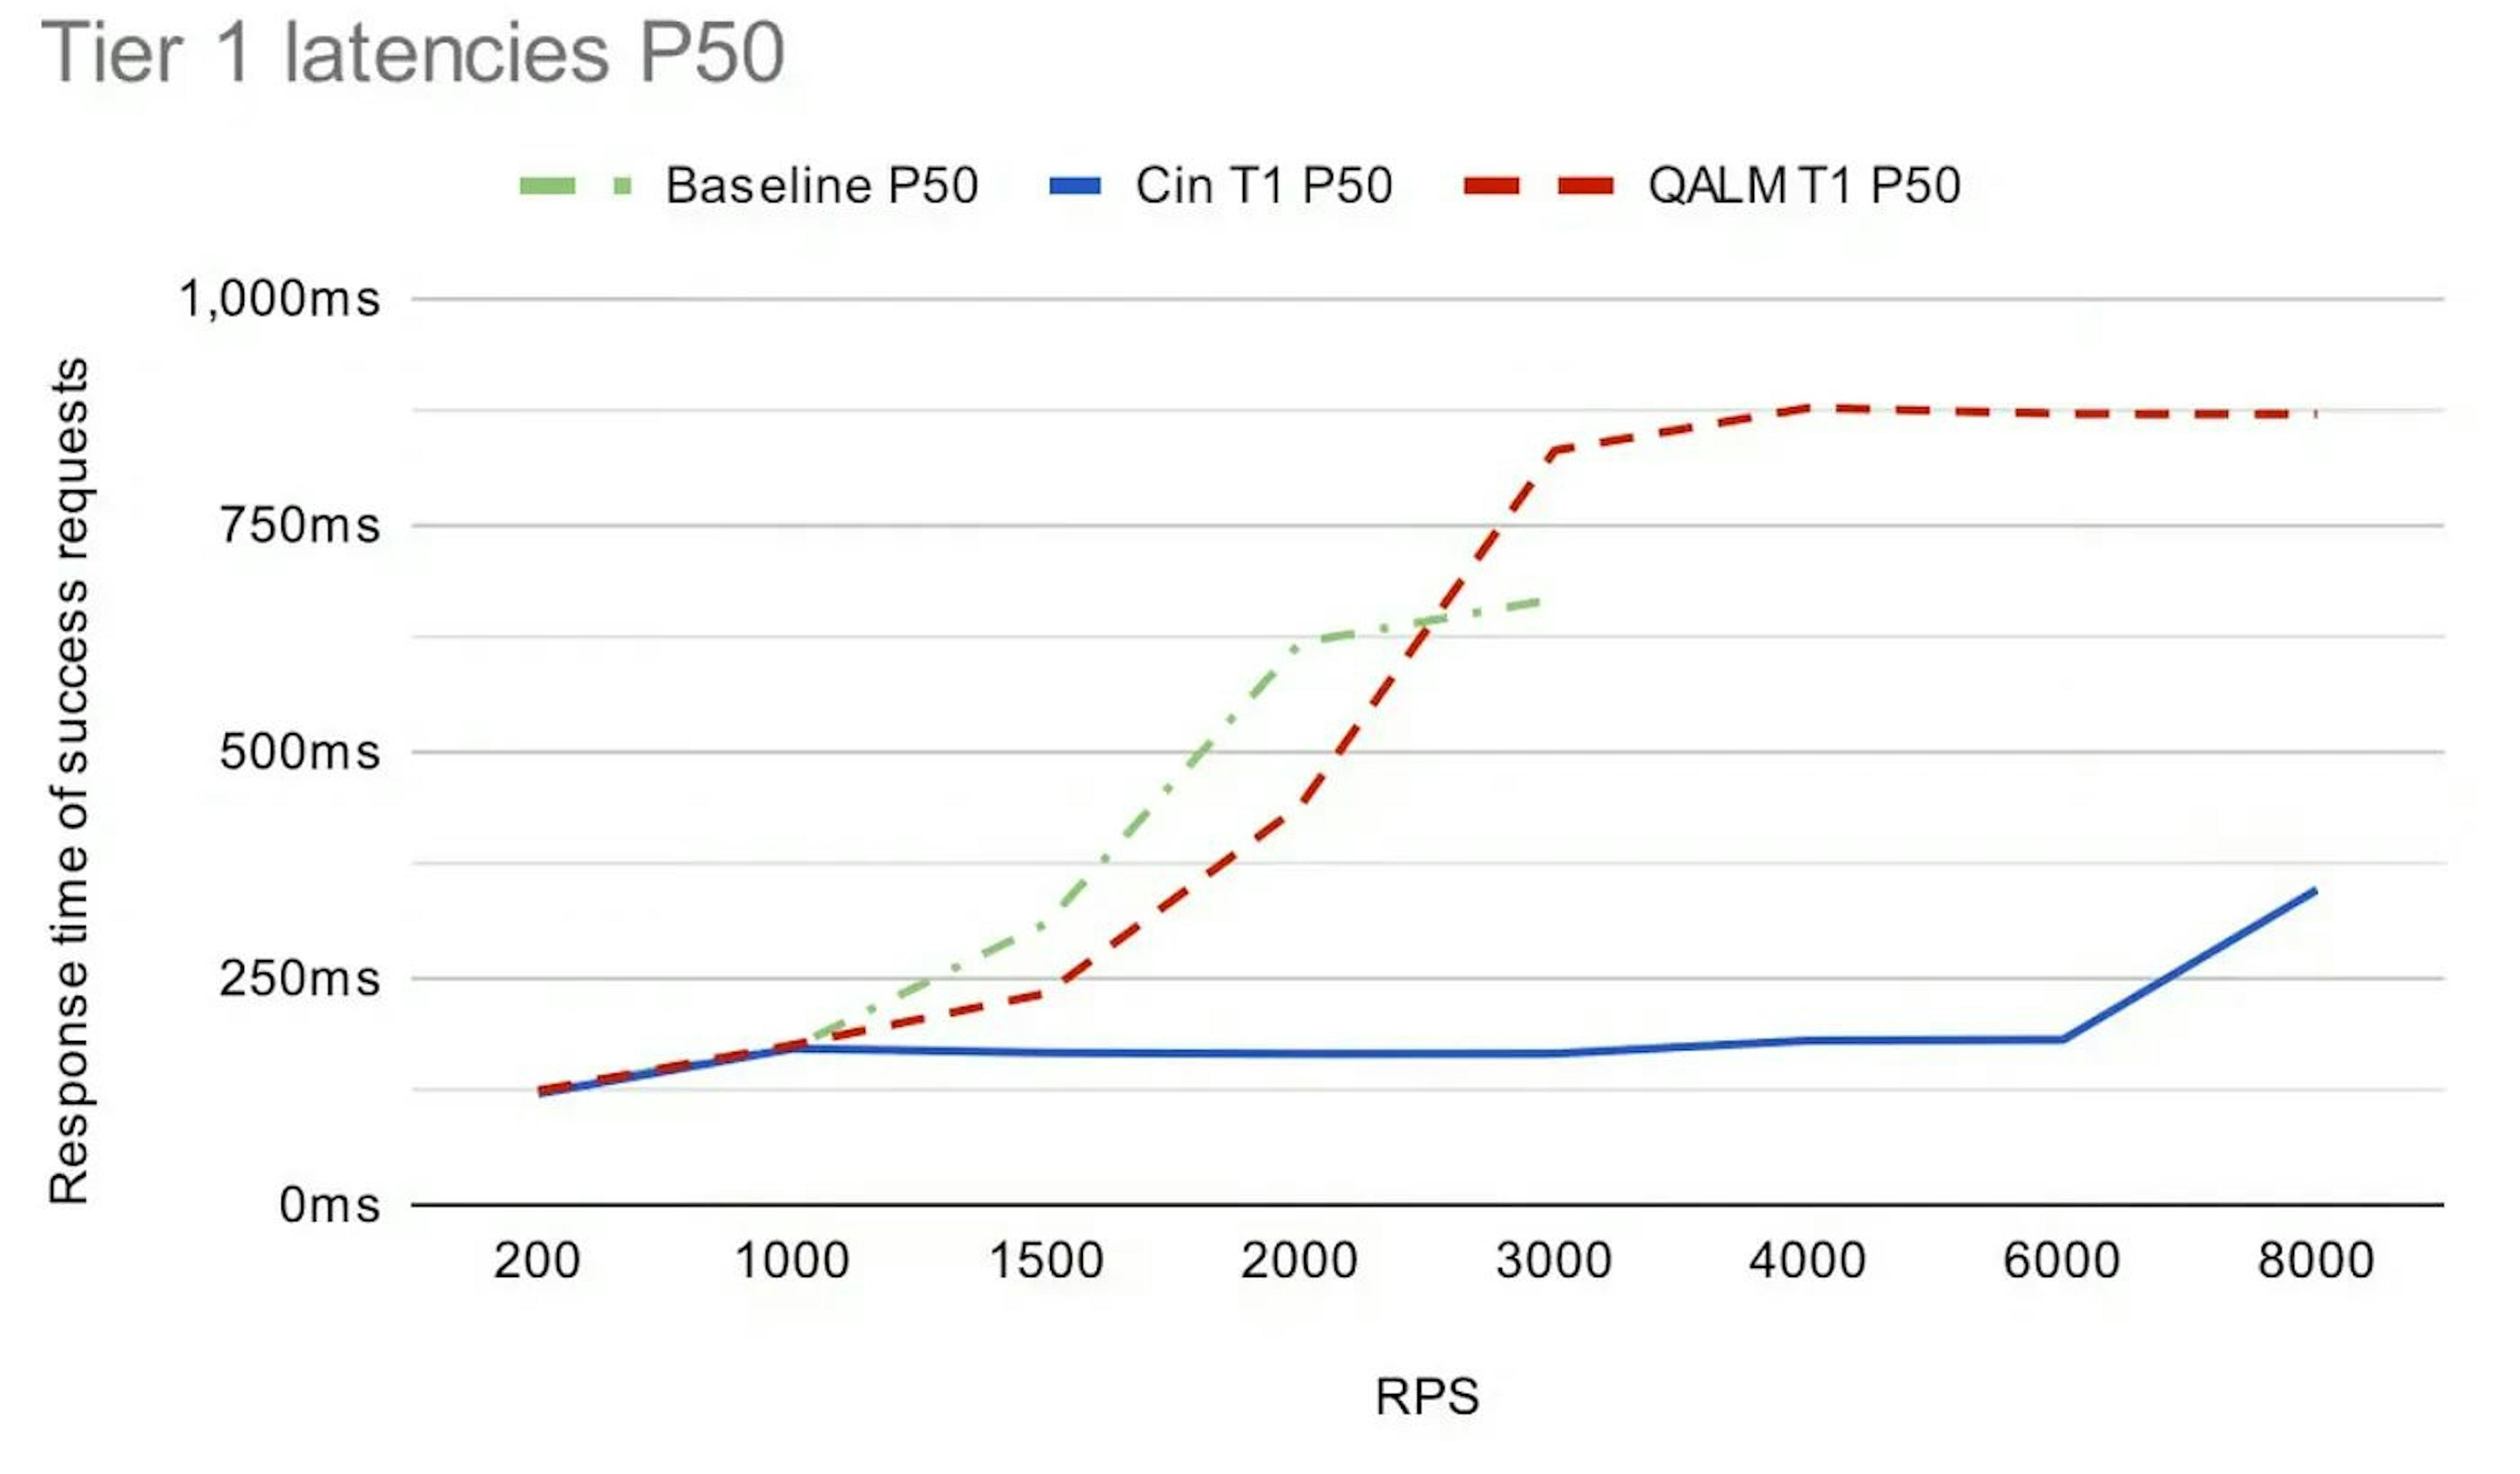 P50-Latenzen für die Anforderungen mit hoher Priorität, Stufe 1, für die drei Setups bei unterschiedlichen eingehenden RPS. (aus dem zuvor erwähnten Uber-Artikel).